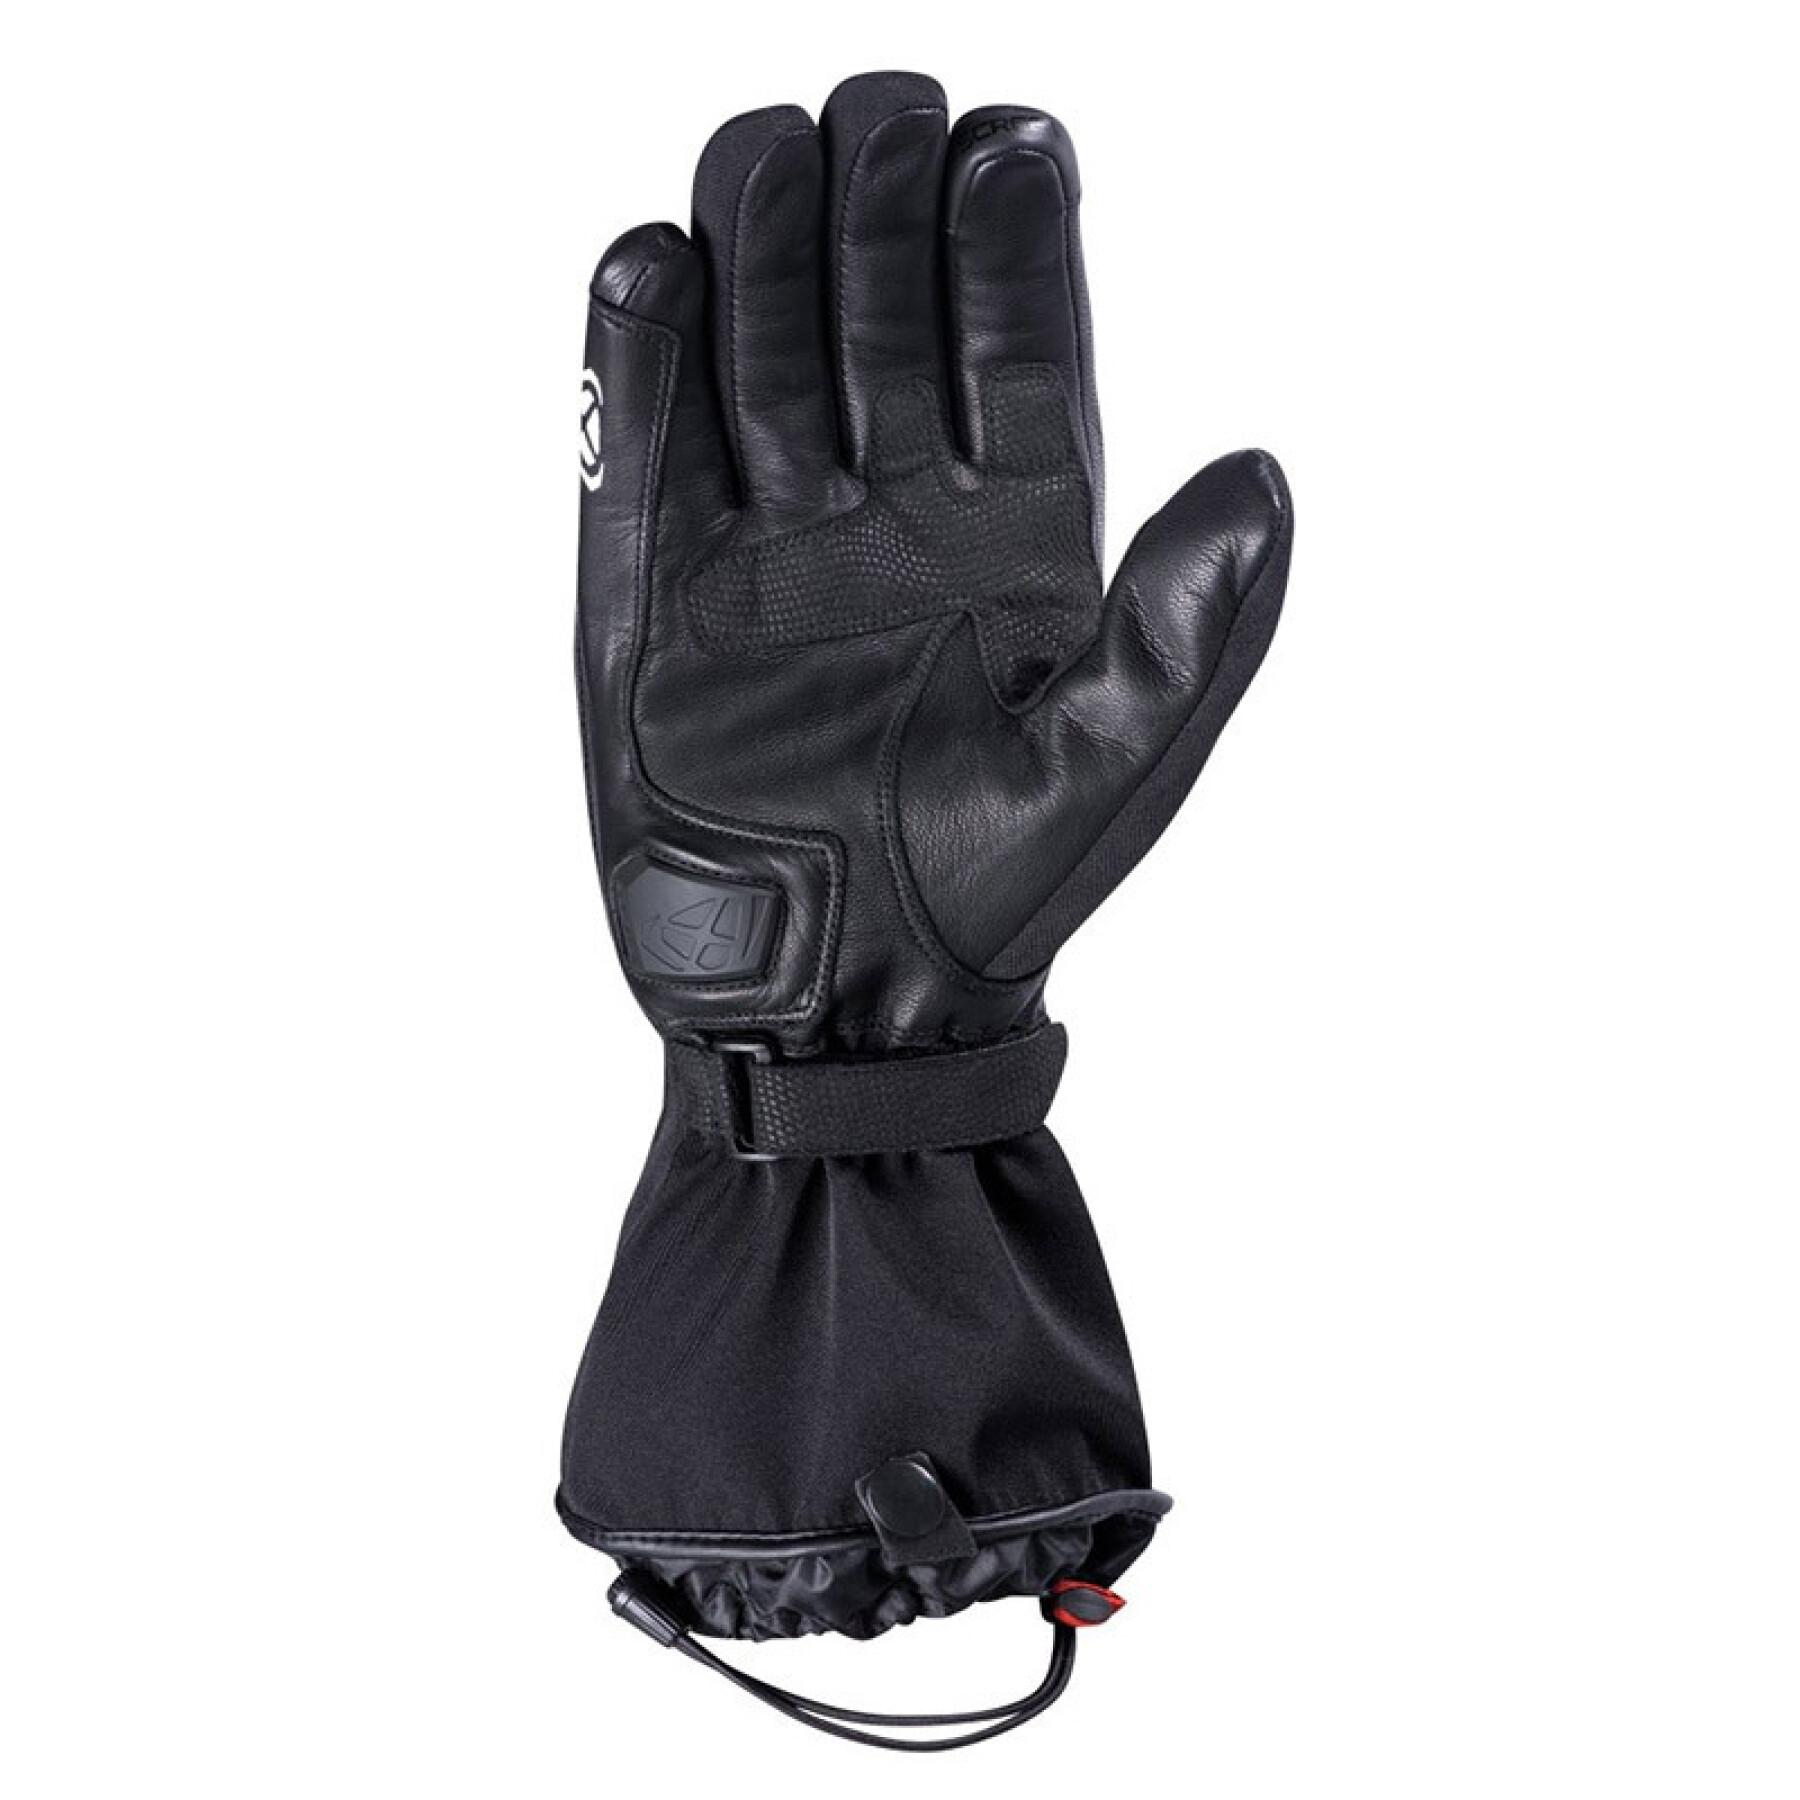 Winter motorcycle gloves Ixon pro axl